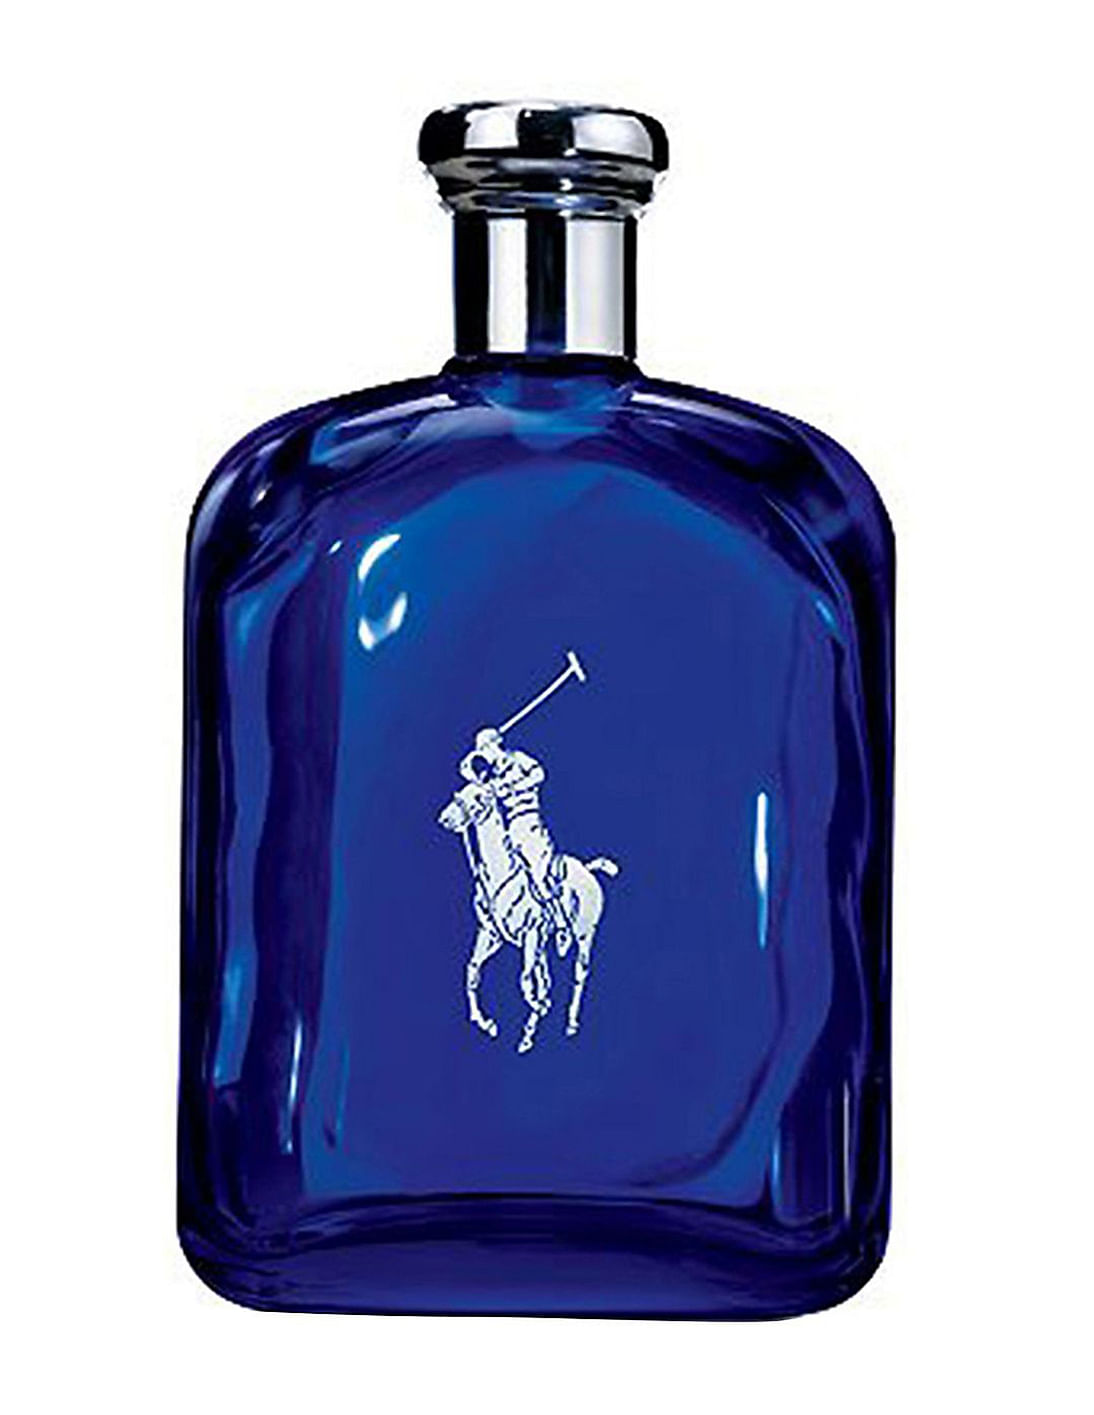 Ralph Lauren Polo Blue Eau De Parfum 75 ml